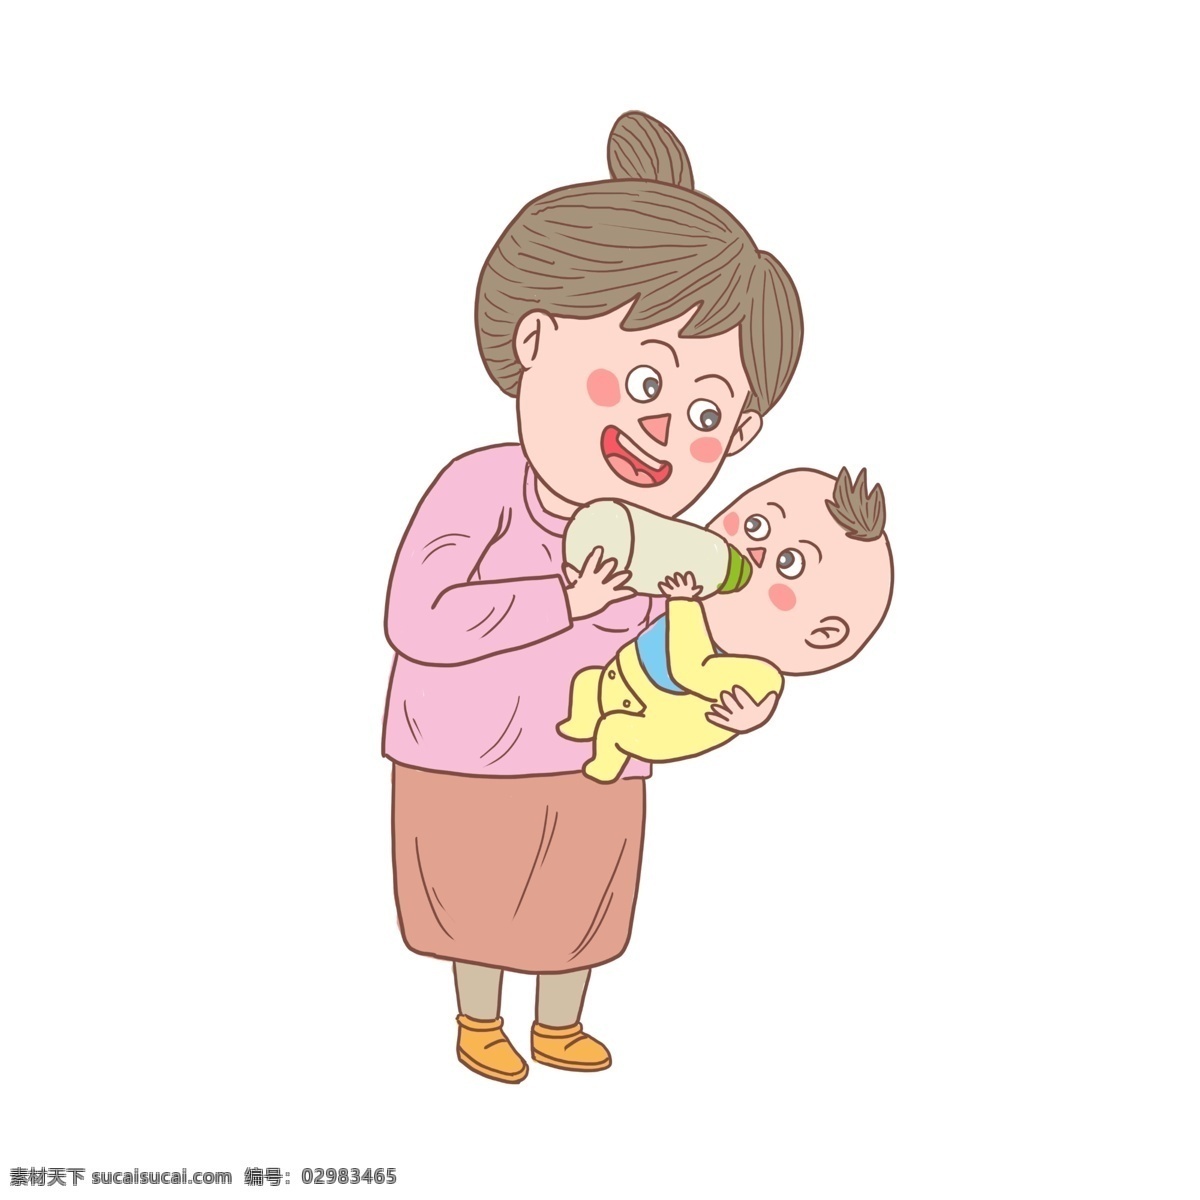 卡通 手绘 母亲 孩子 母亲和孩子 妈妈 娃娃 喂奶 小男娃 卡通人物 妈妈抱孩子 母子